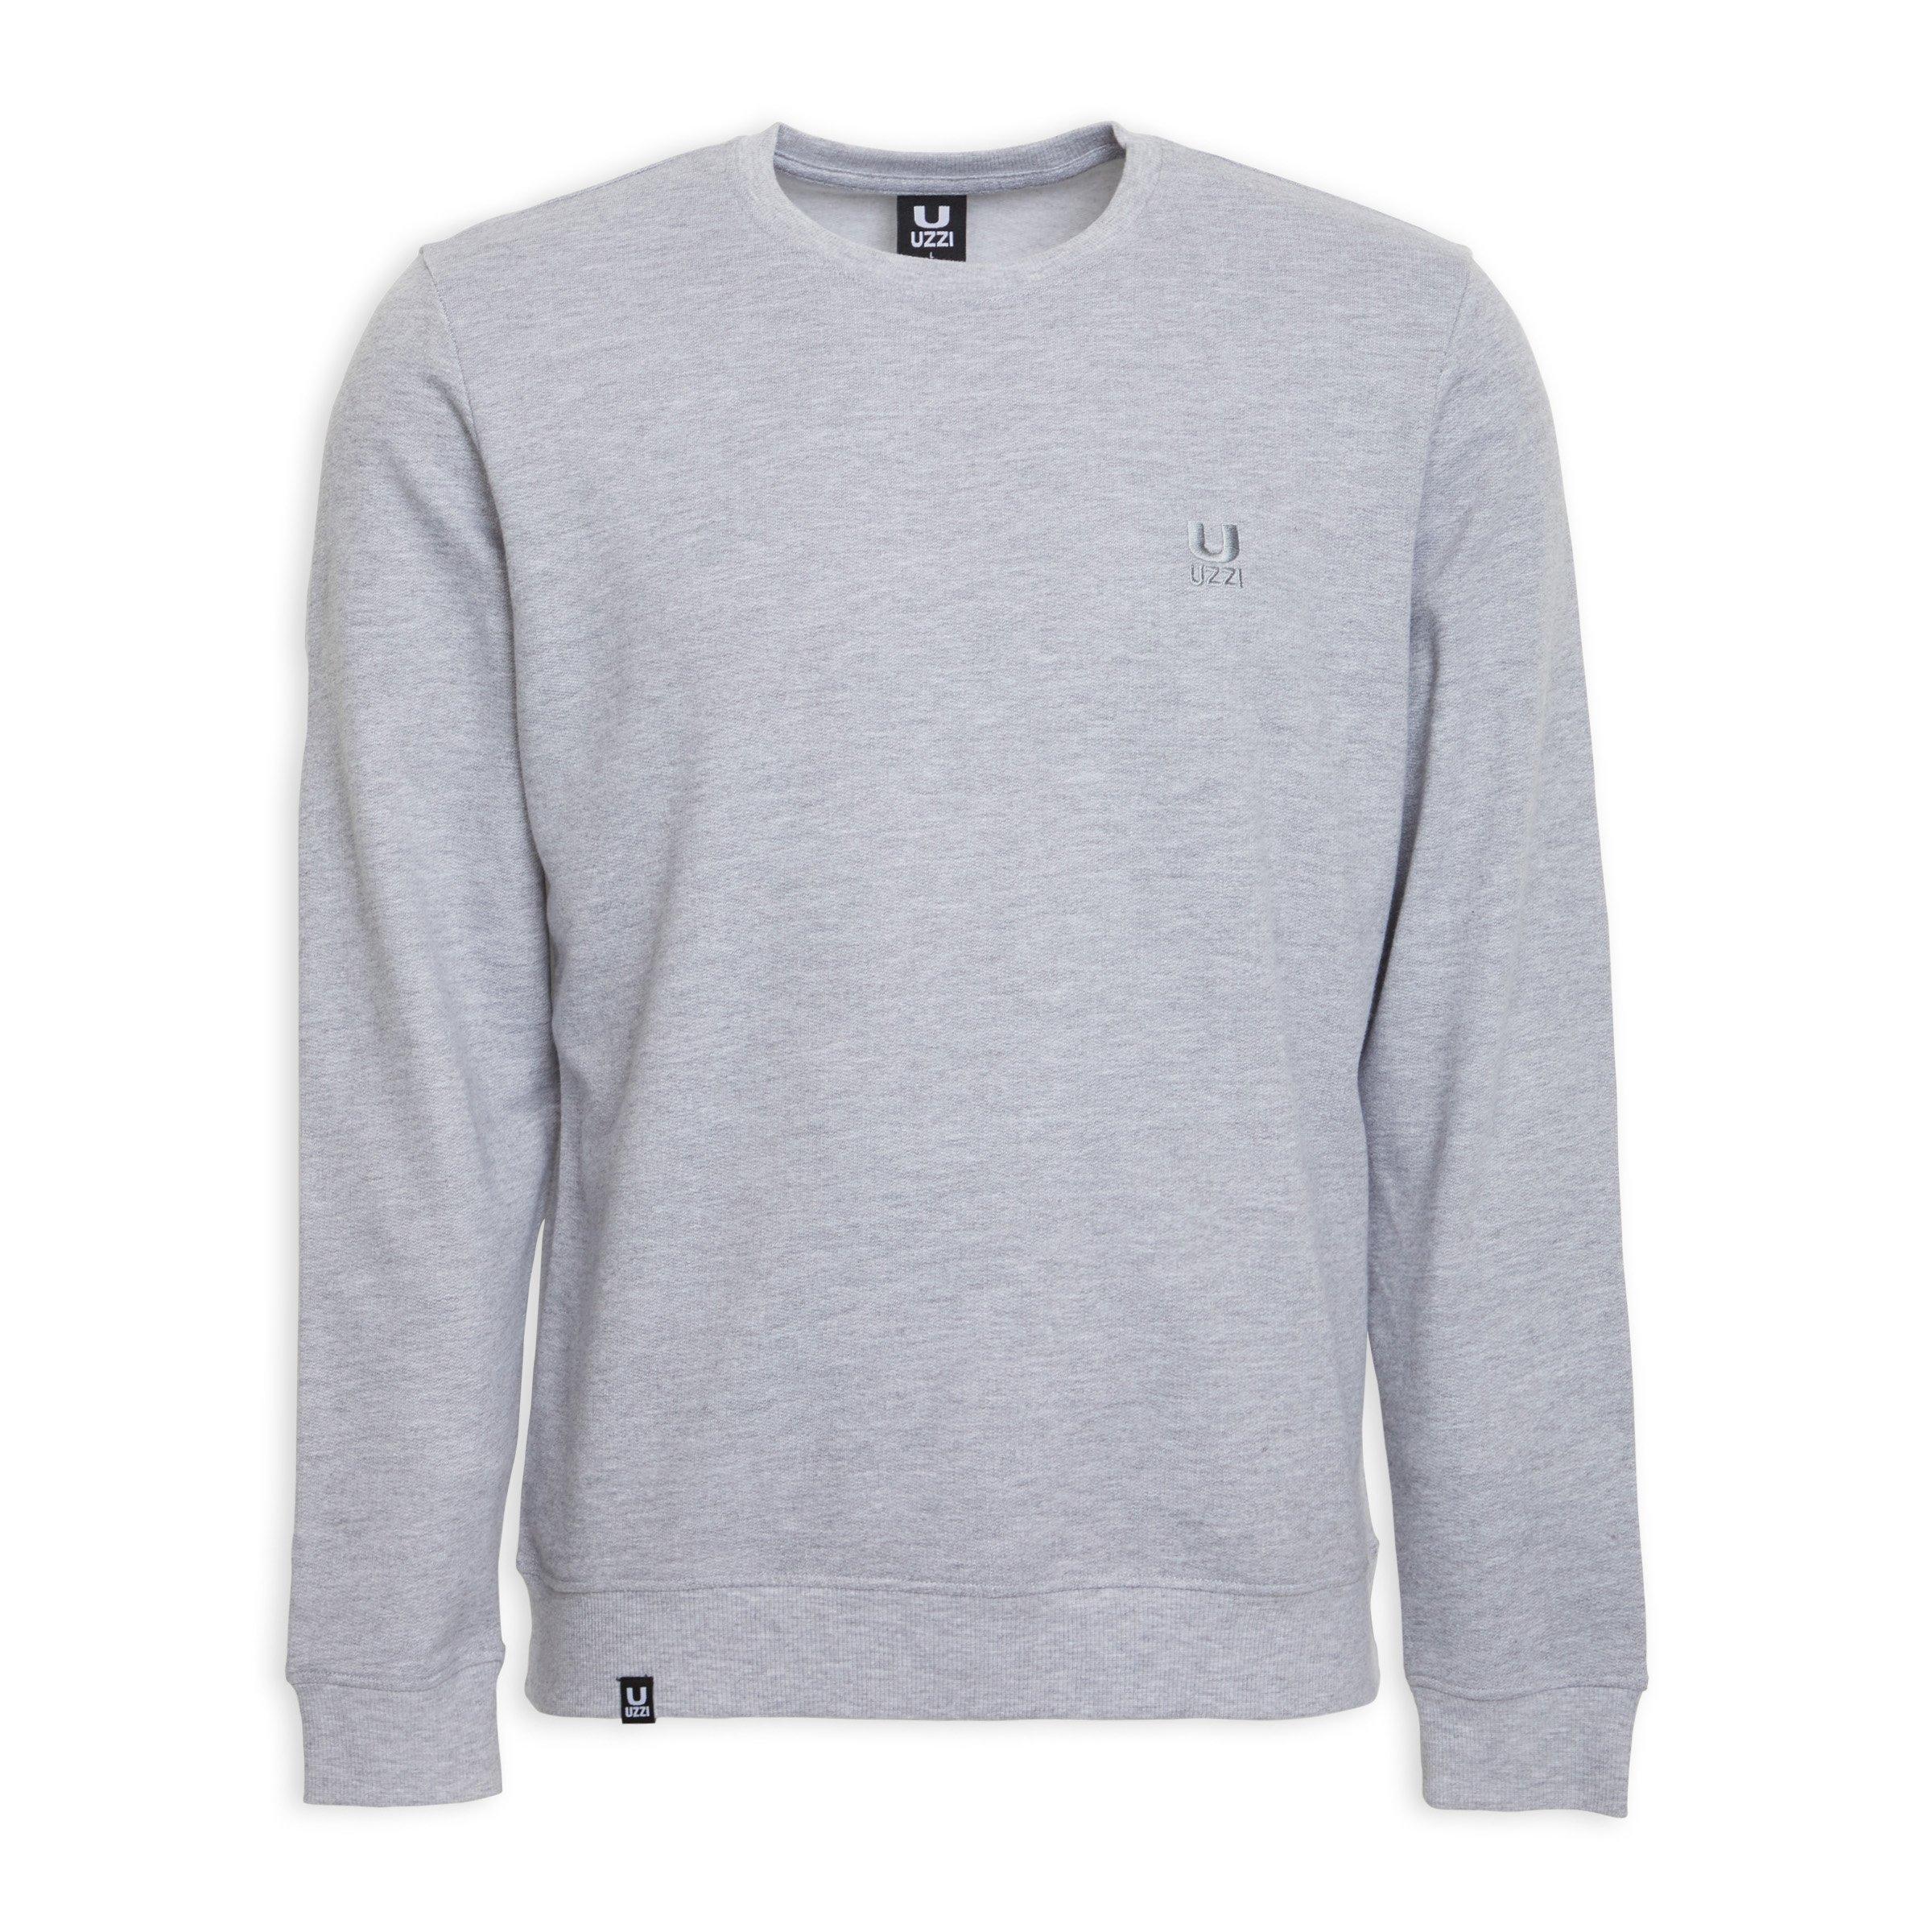 Buy UZZI Grey Crew Neck Sweater Online | Truworths